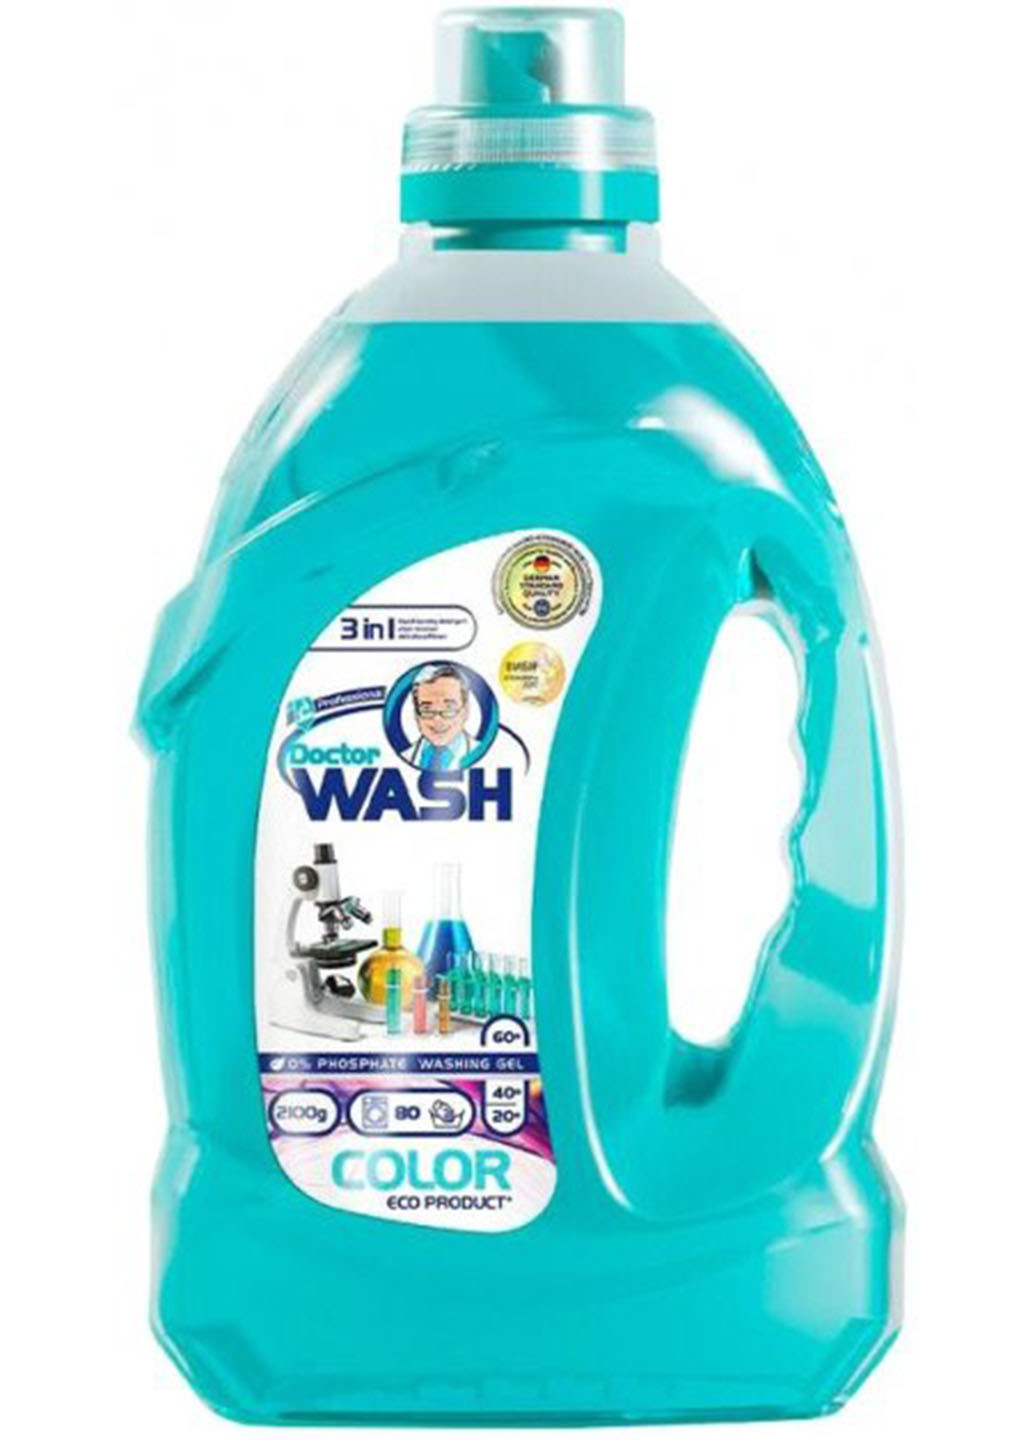 Гель для стирки цветных вещей 2.1 кг (90 прань) Doctor Wash (254255791)